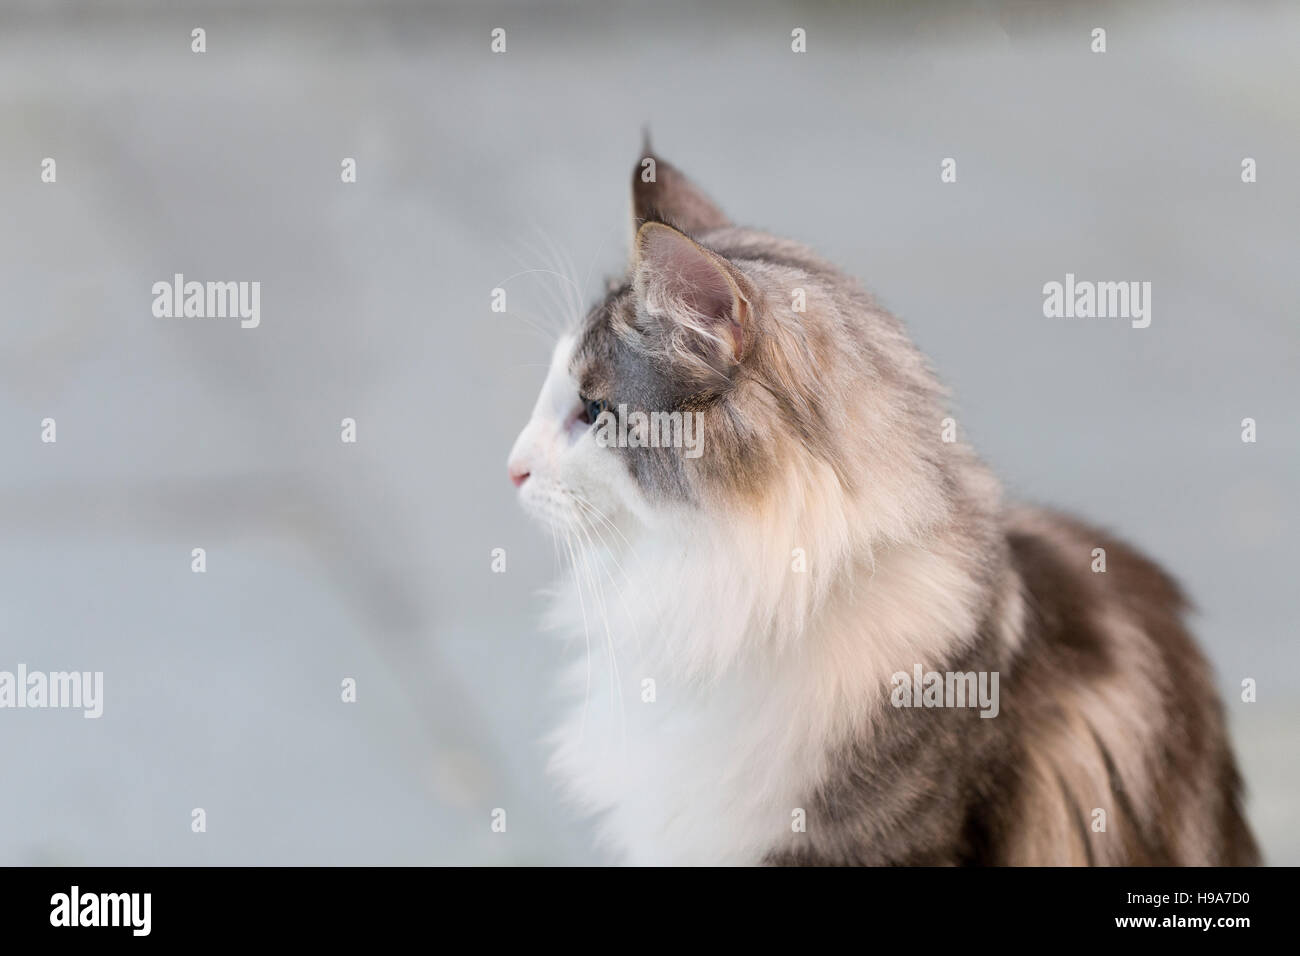 Bruno gatto con soffici petto guardando la scena, shot contro uno sfondo grigio Foto Stock